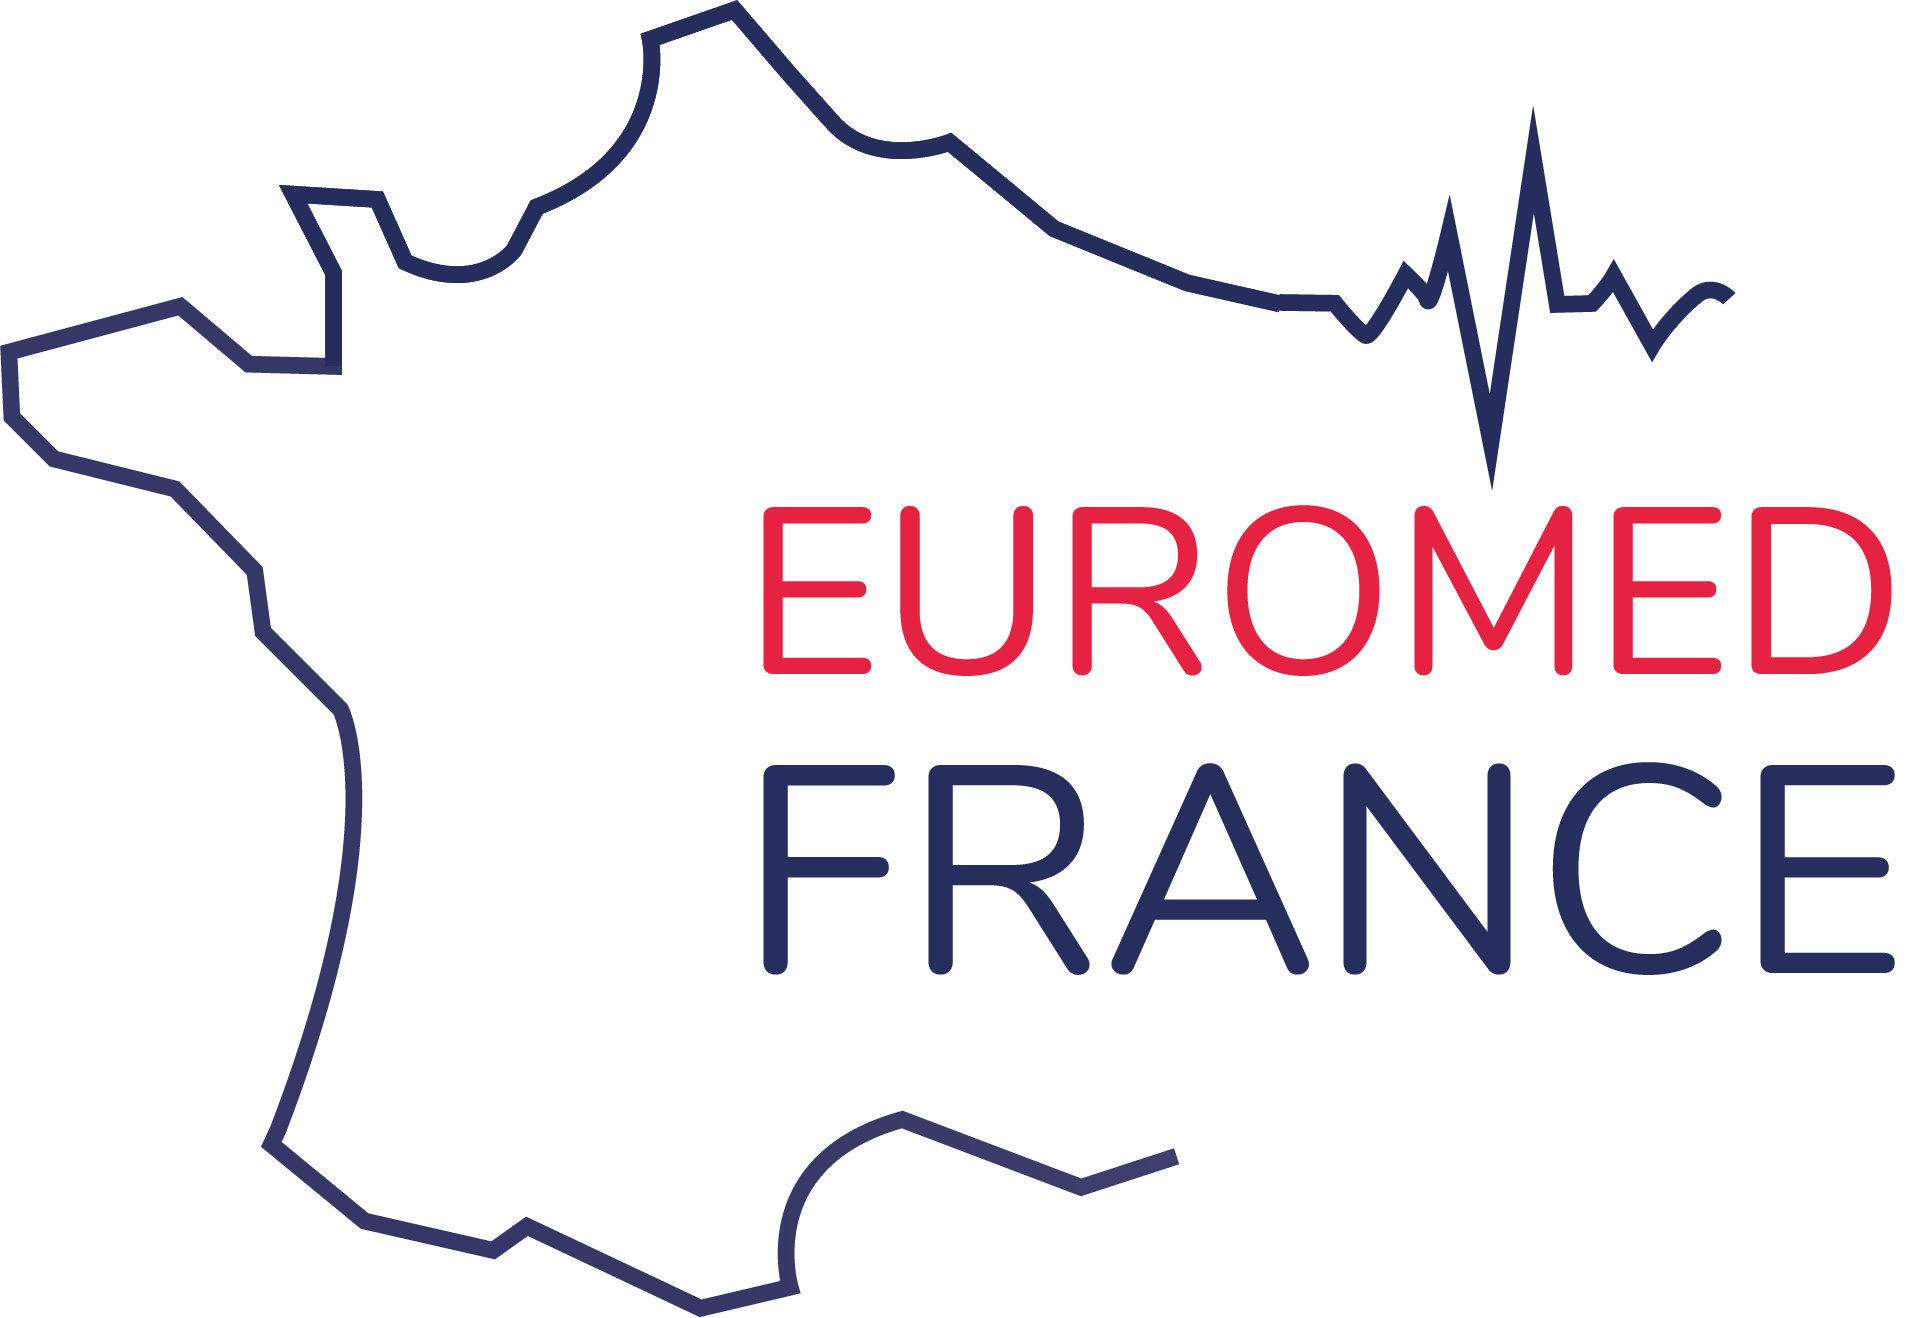 Euromed France